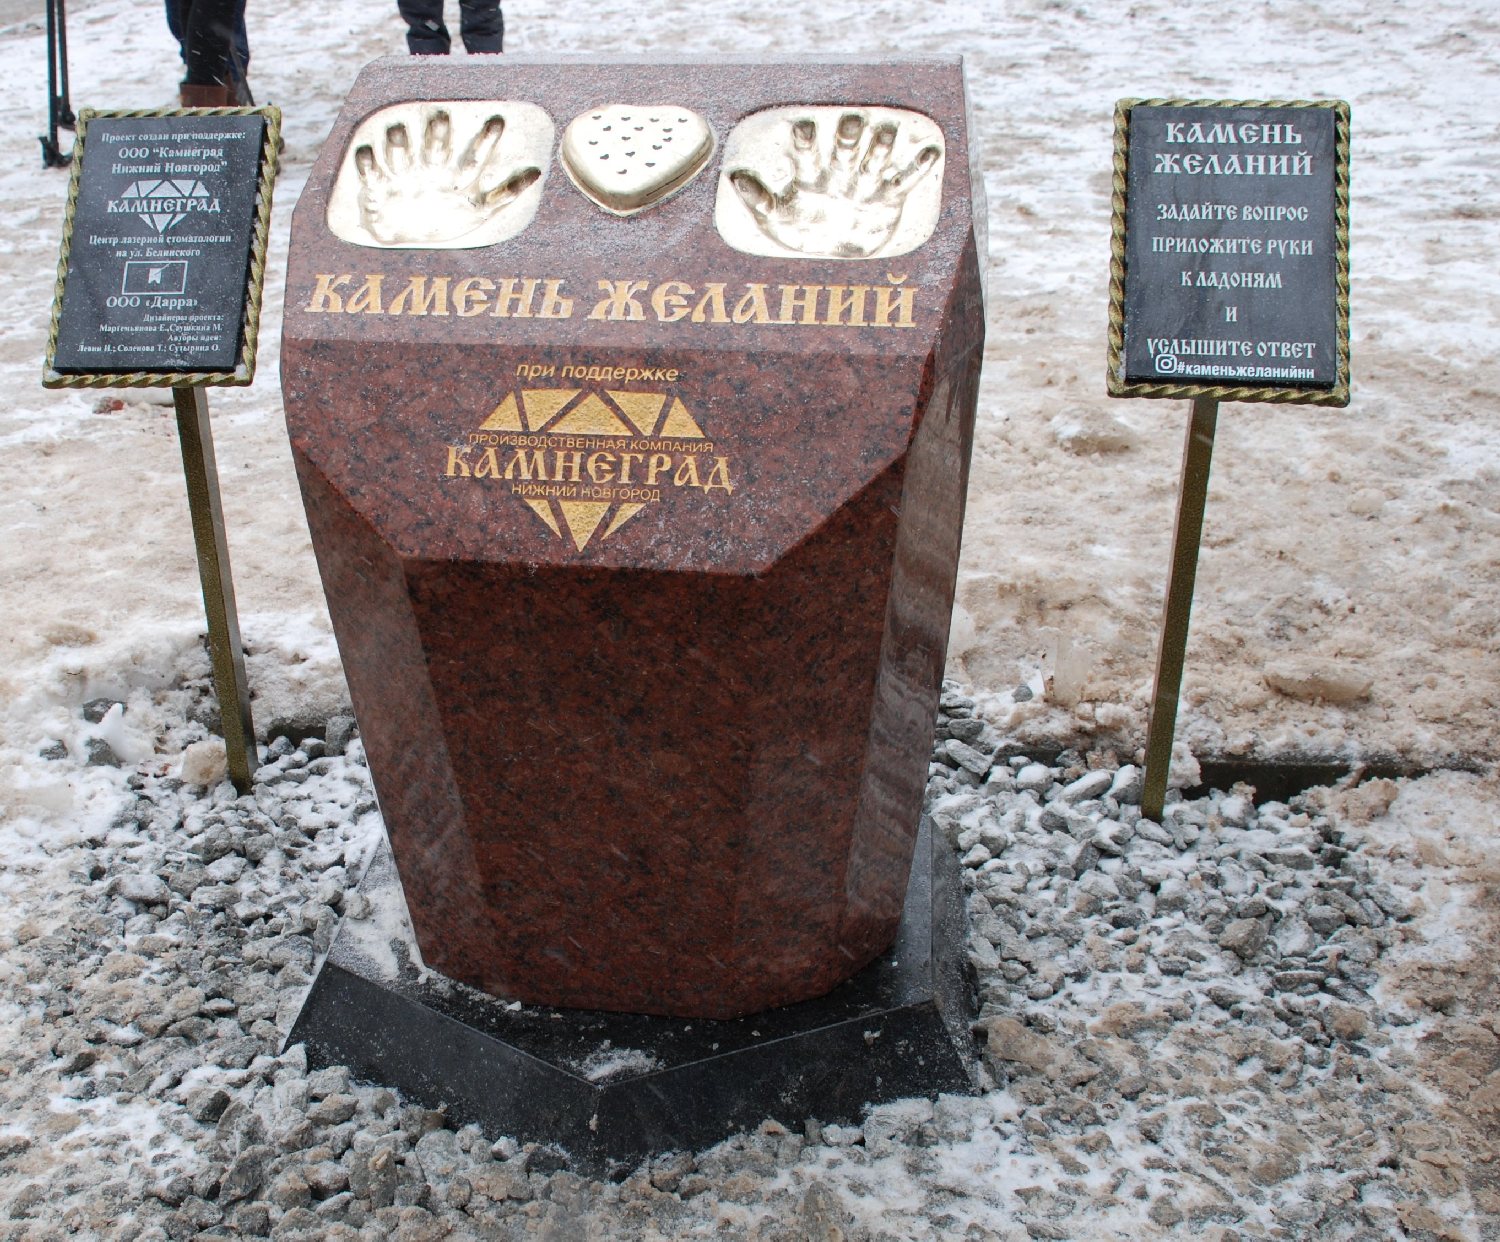 Скульптуру &laquo;Камень желаний&raquo; установили в Нижнем Новгороде (ФОТО) - фото 7